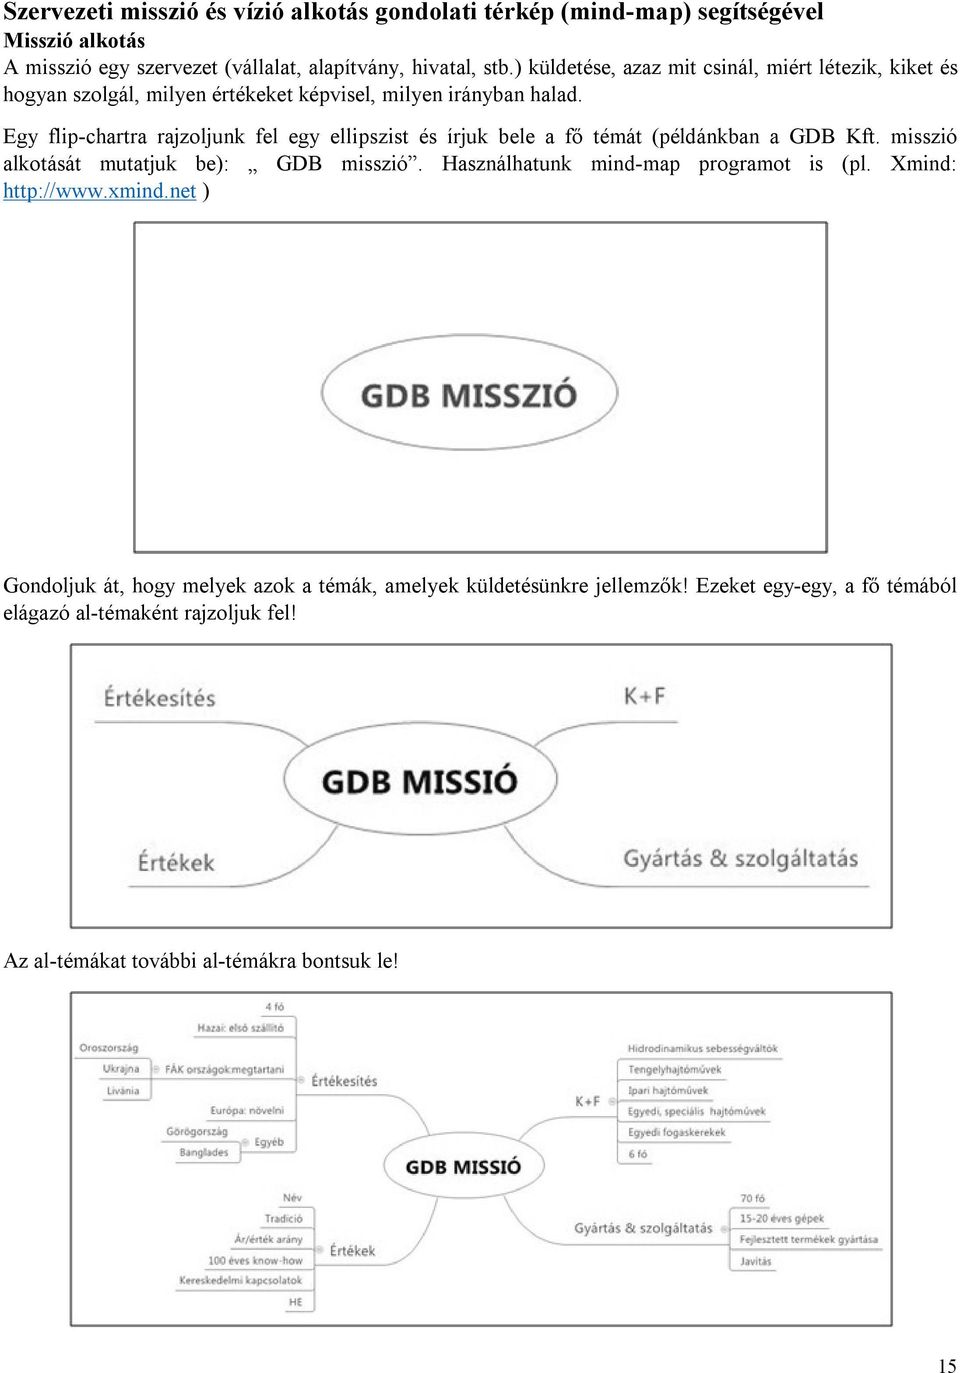 Egy flip-chartra rajzoljunk fel egy ellipszist és írjuk bele a fő témát (példánkban a GDB Kft. misszió alkotását mutatjuk be): GDB misszió.